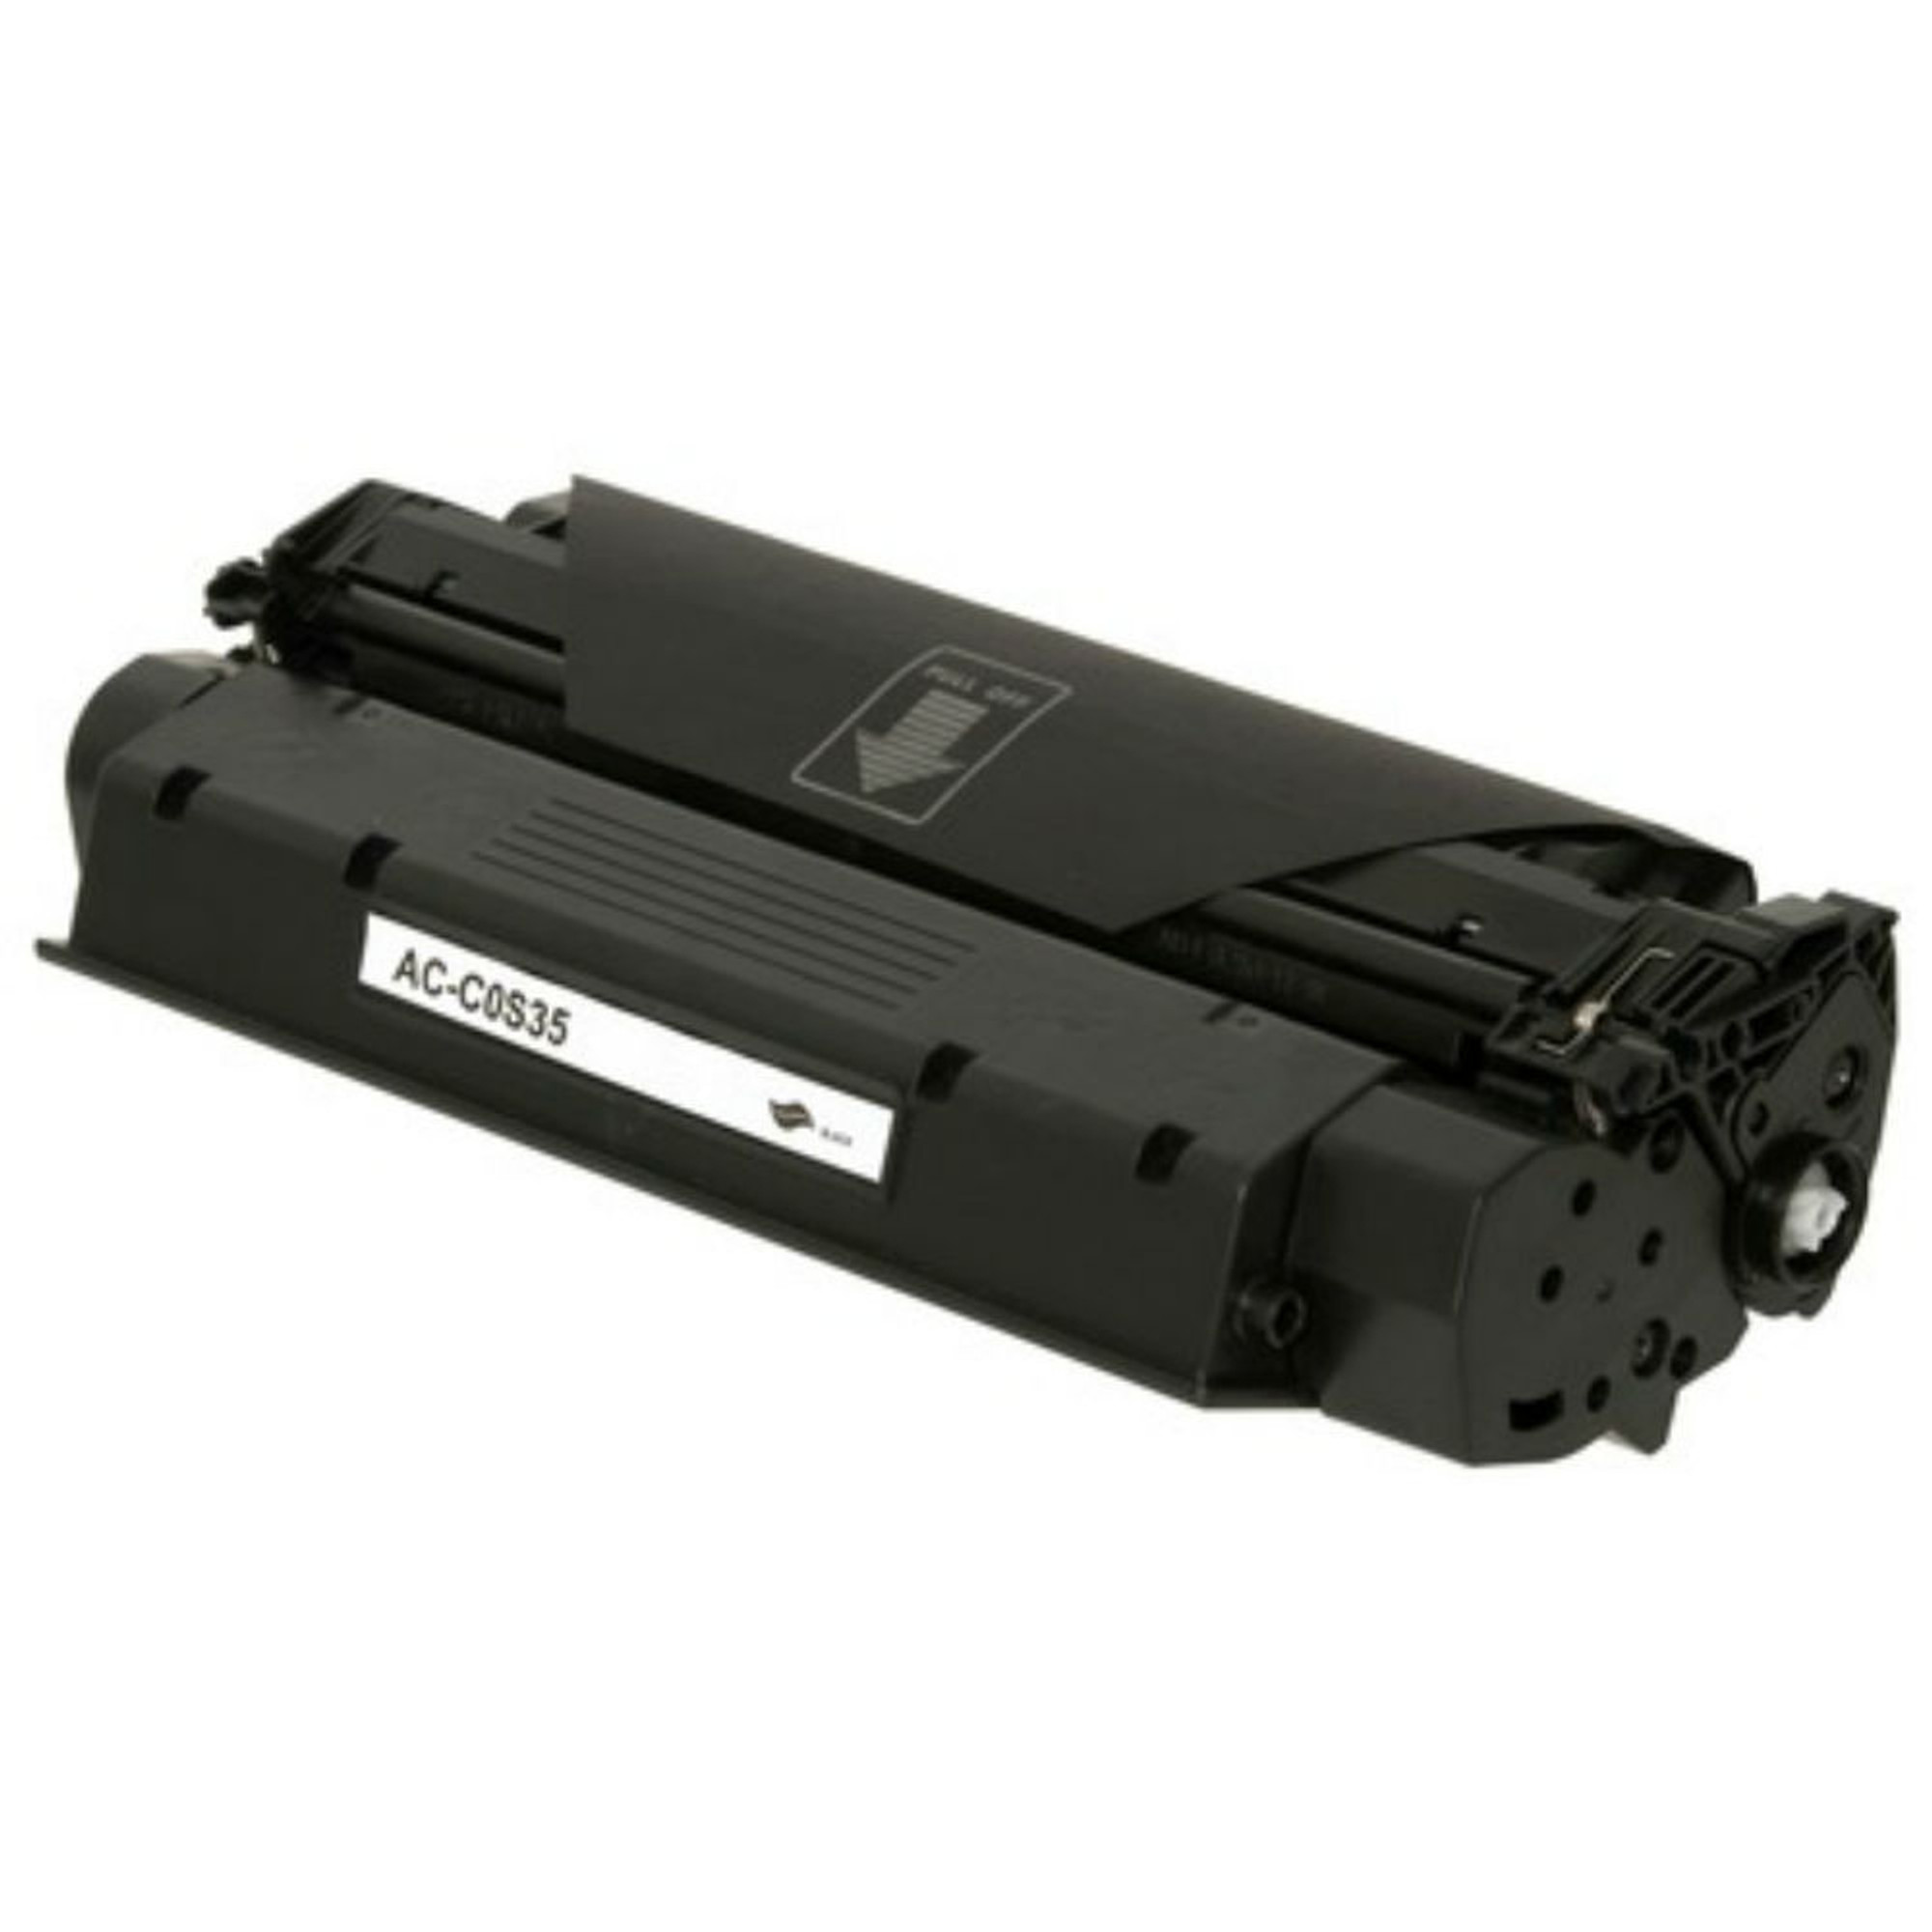 Stå på ski flaskehals erfaring Regular Toner for Canon Fax L380, L400, Laserclass 510, Copier D320, D340 &  Fx-8 Laser Printer